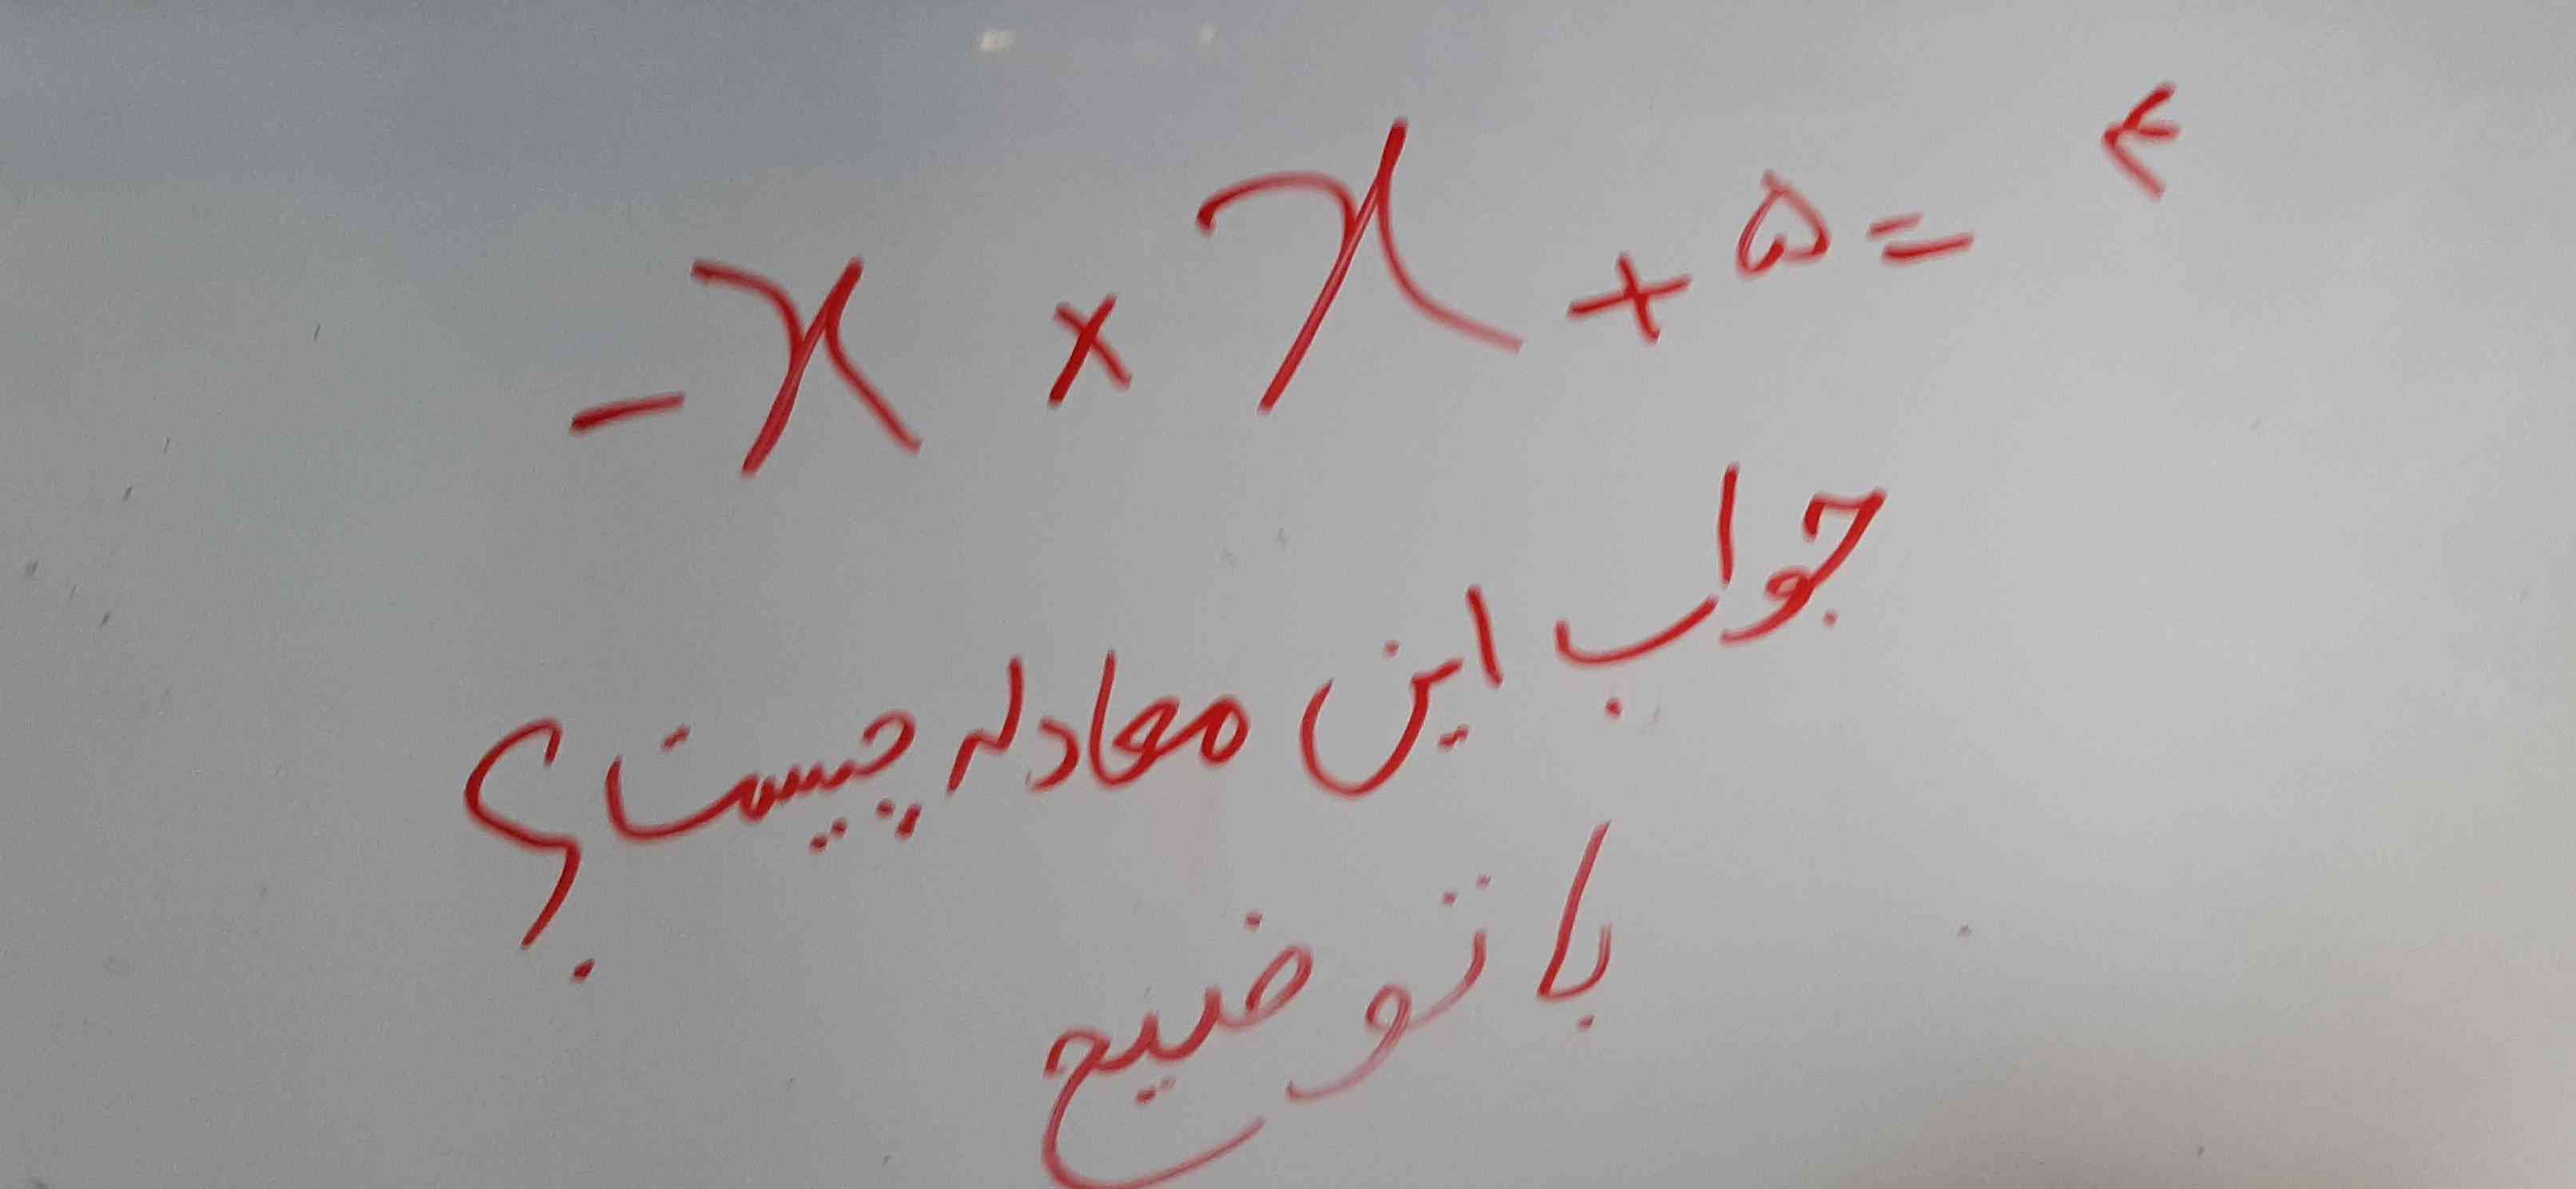 جواب این معادله با توضیح تاج میدم؟ 
